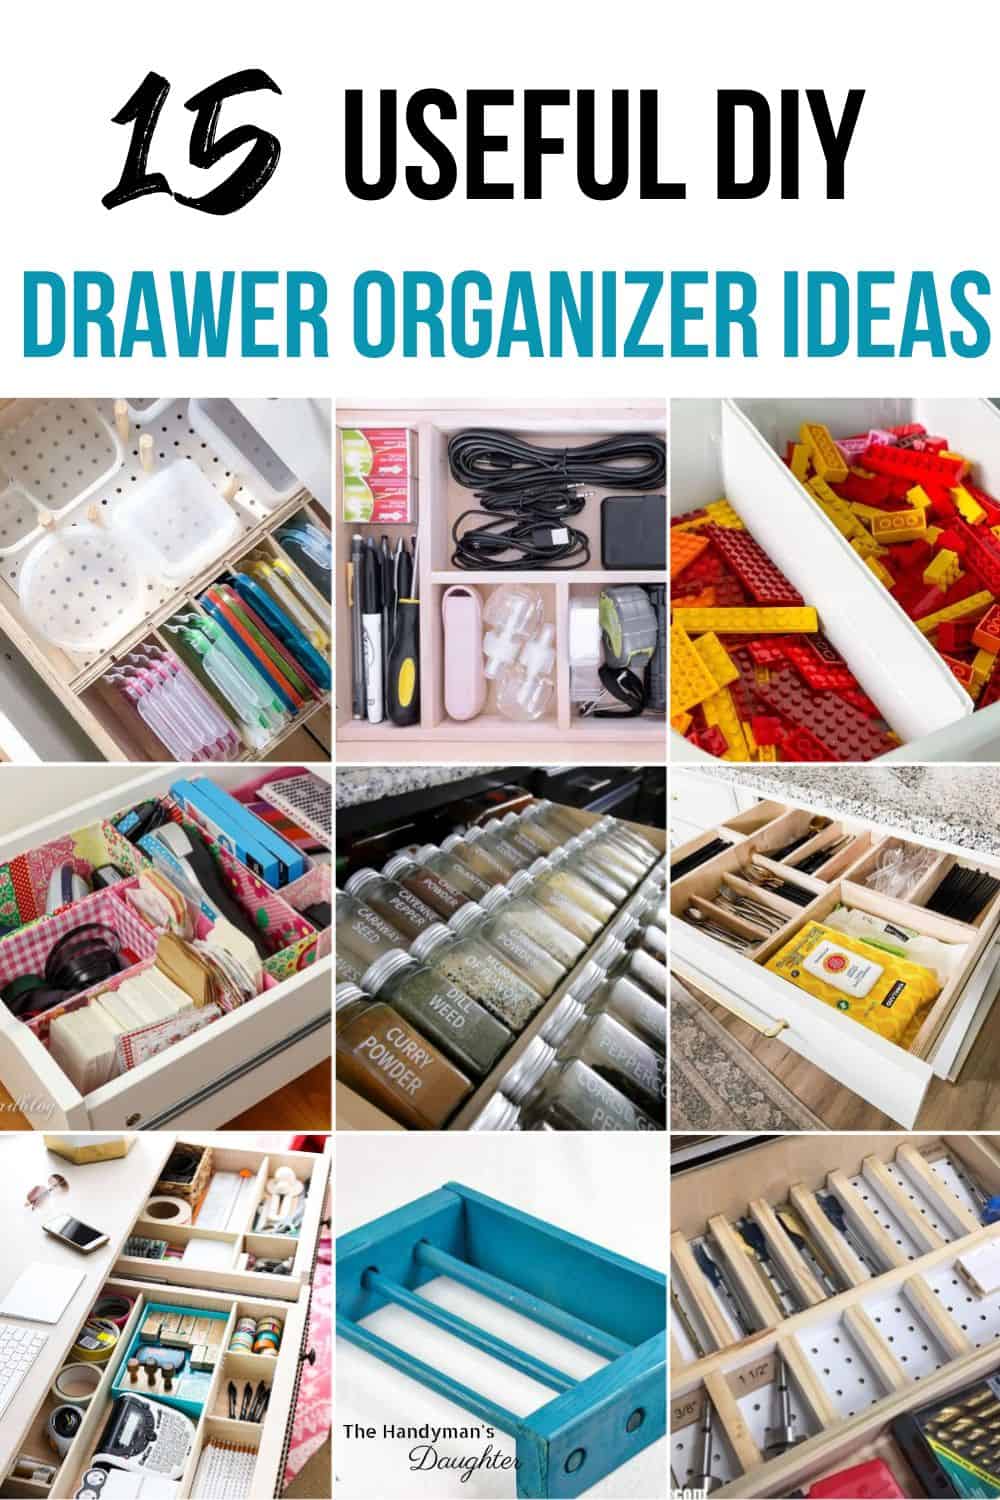 15 useful DIY drawer organizer ideas collage